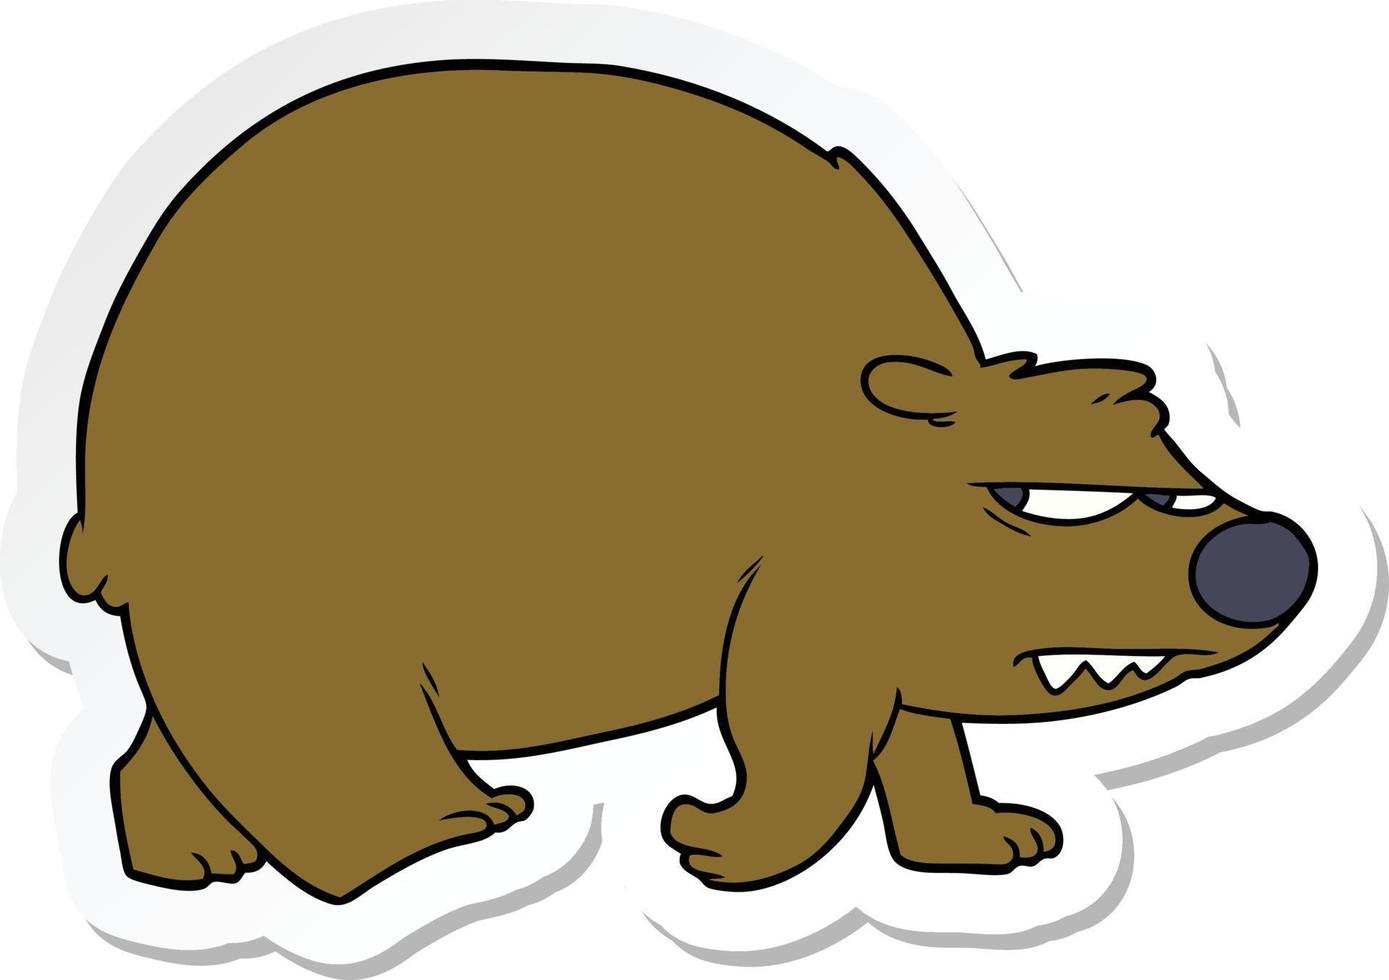 klistermärke av en tecknad arg björn vektor